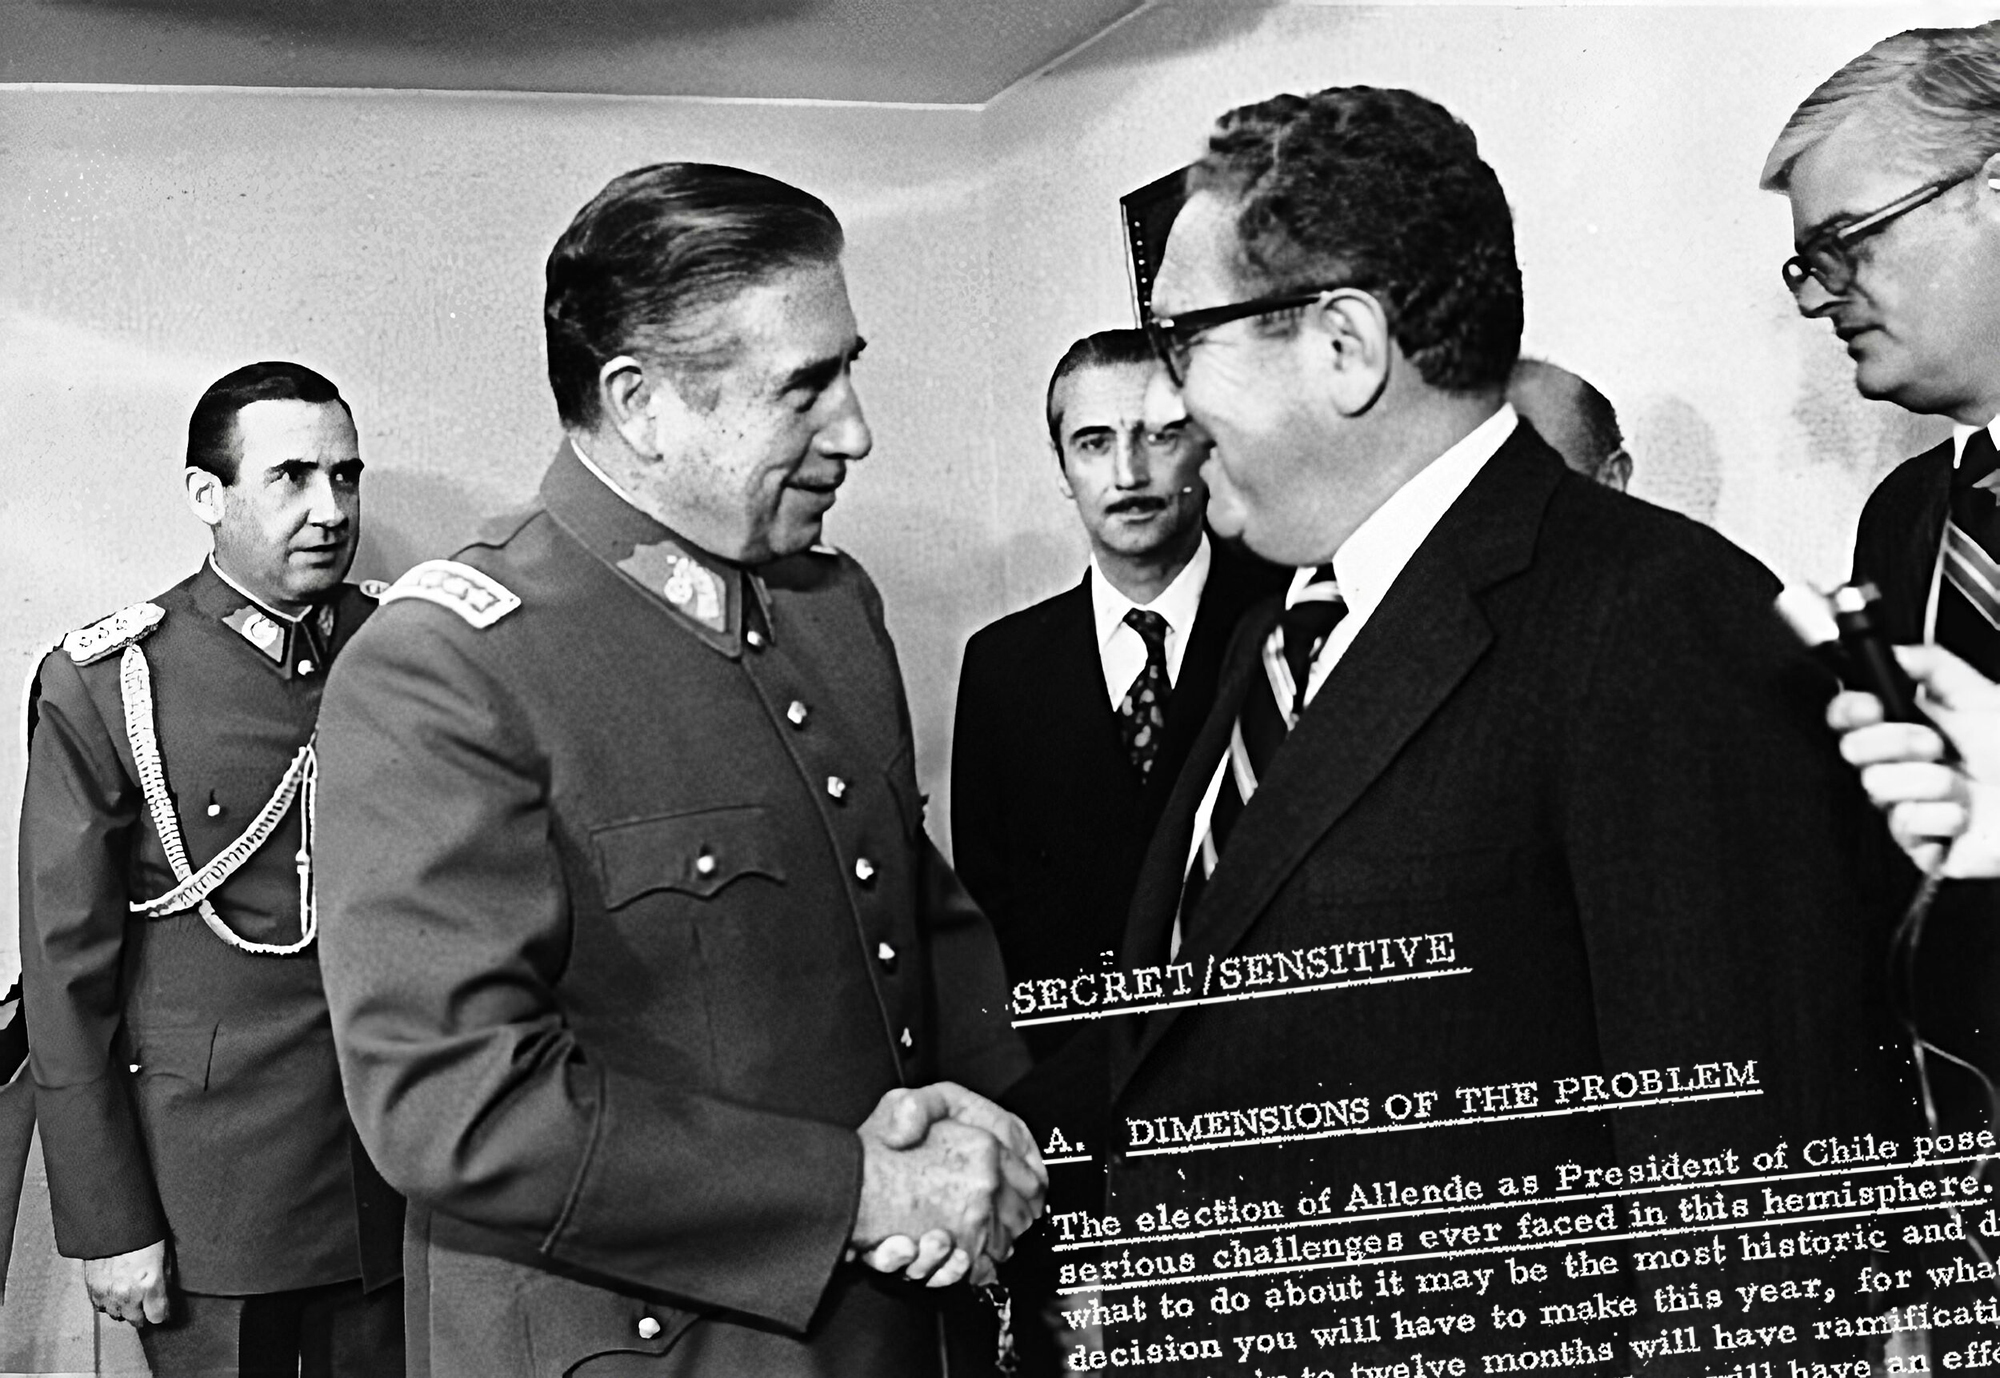 Amerikako Estatuen Erakundeak antolatuta Henry Kissinger AEBeko Estatu Idazkariak bisita egin zuen 1976an Txileko Santiagora eta Augusto Pinochetekin bildu zen. Publikoki giza eskubideen urraketak salatu zituen, baina pribatuan babes osoa eman zion, CIAko